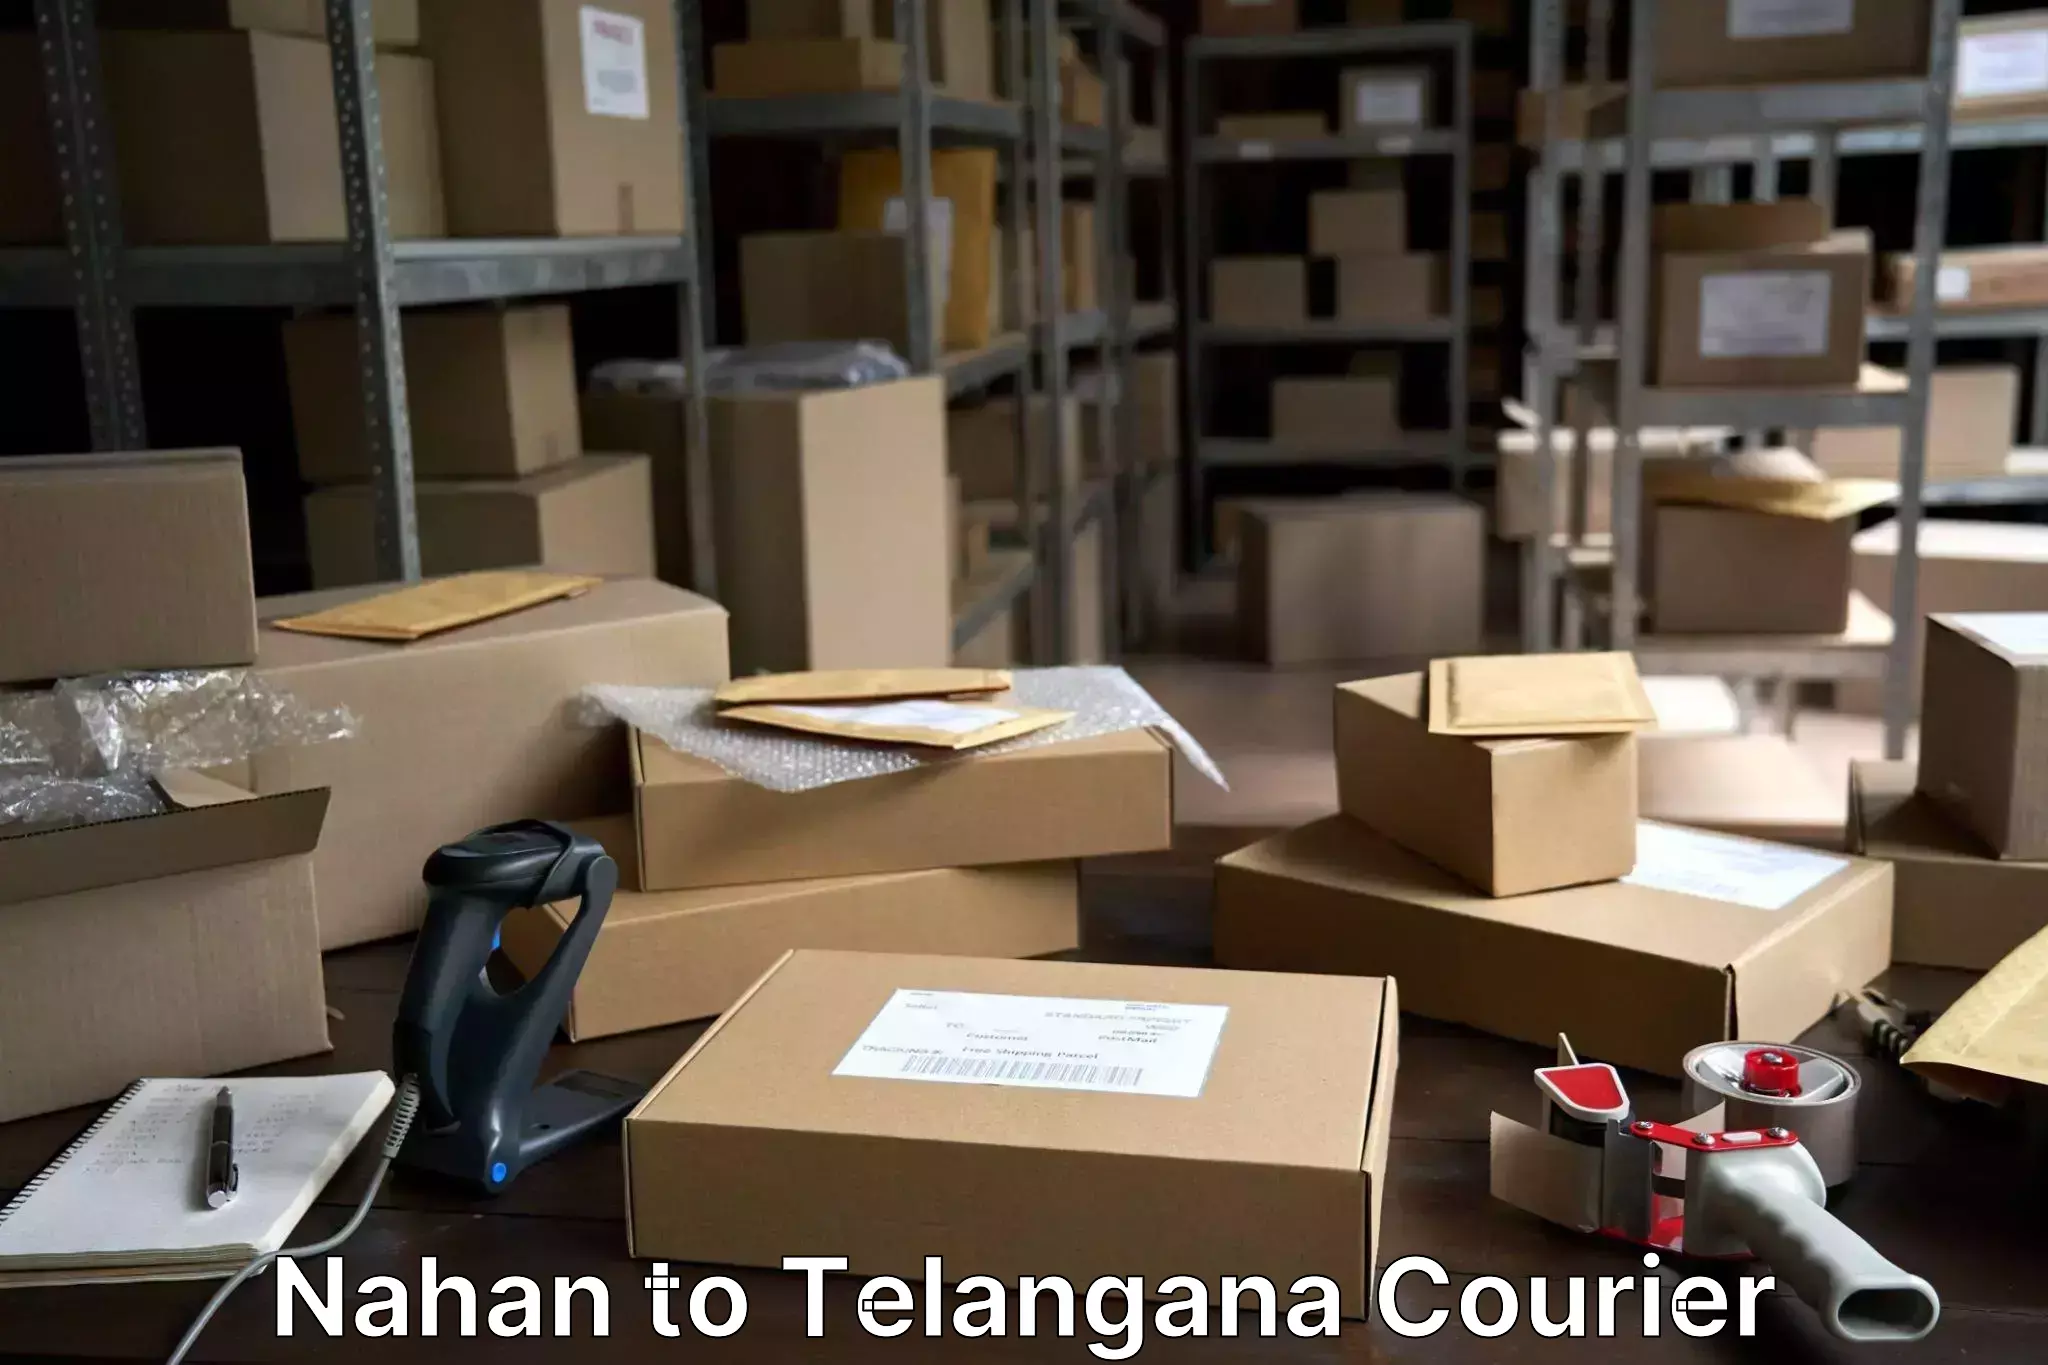 Luggage delivery app Nahan to Jainoor